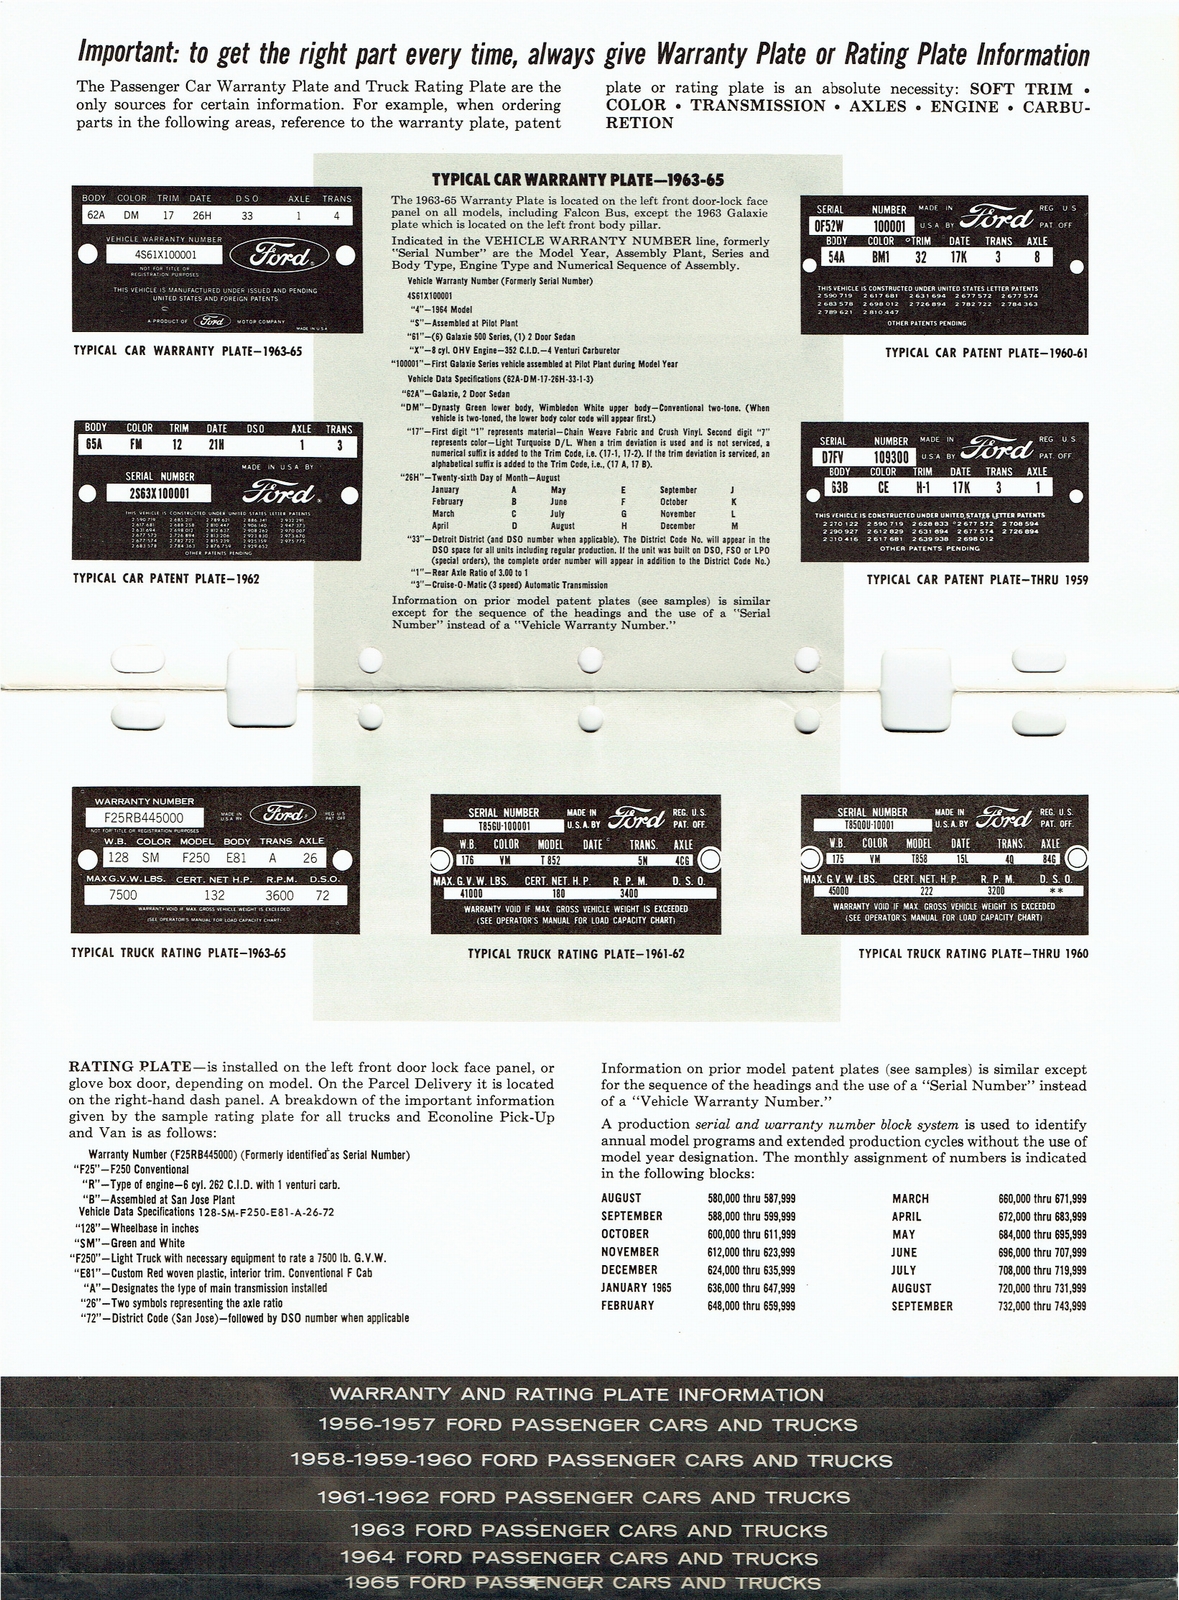 n_1956-1965 Ford Model & Engine ID Guide-02-03.jpg